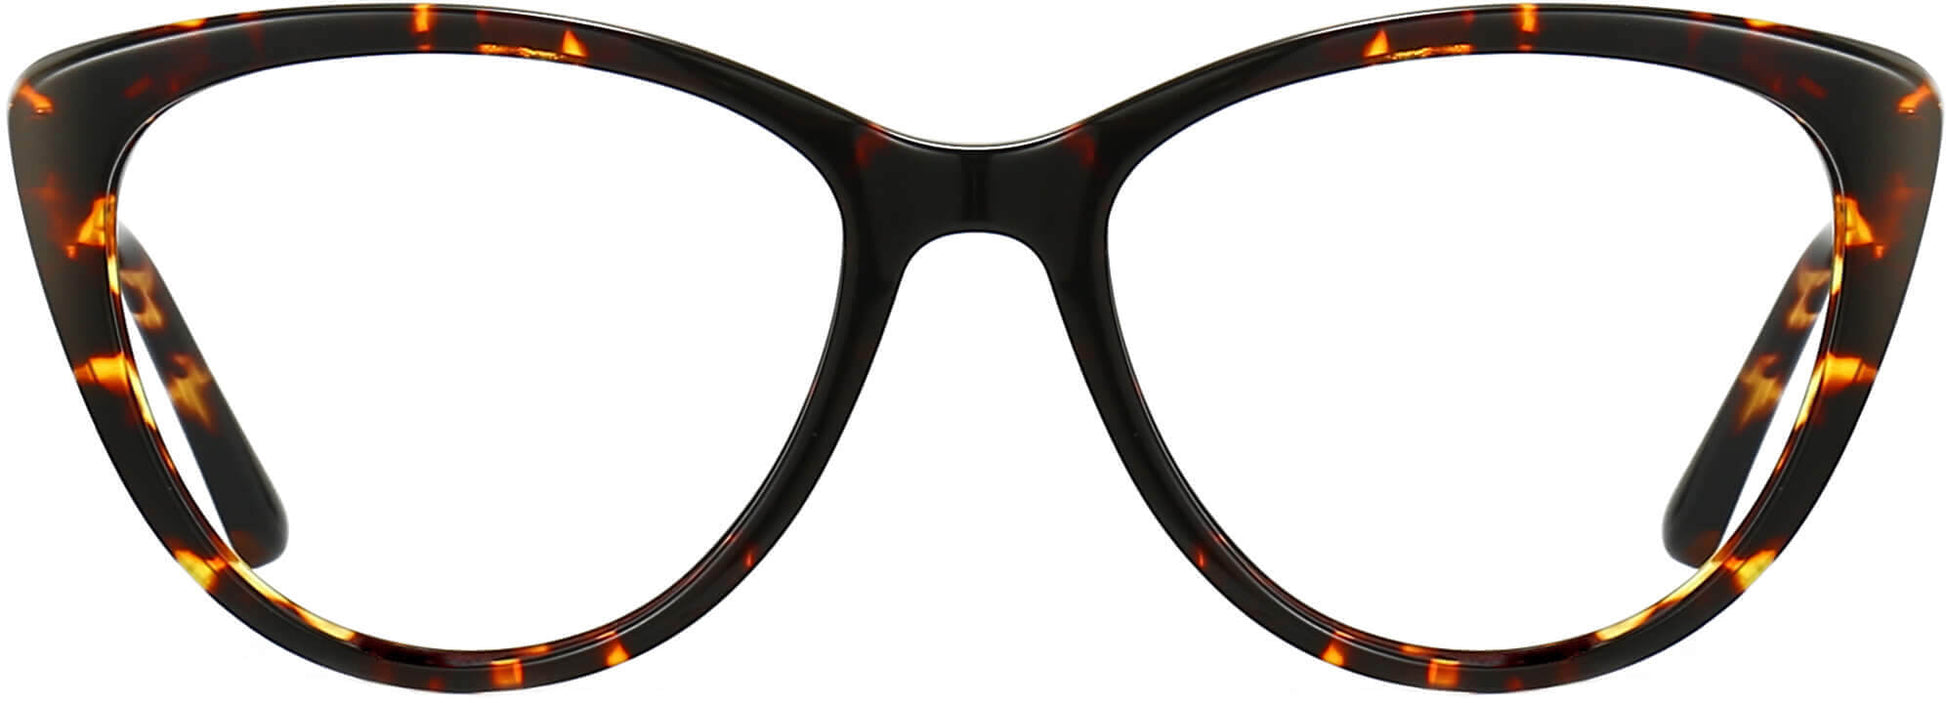 Mya Cateye Tortoise Eyeglasses from ANRRI, front view